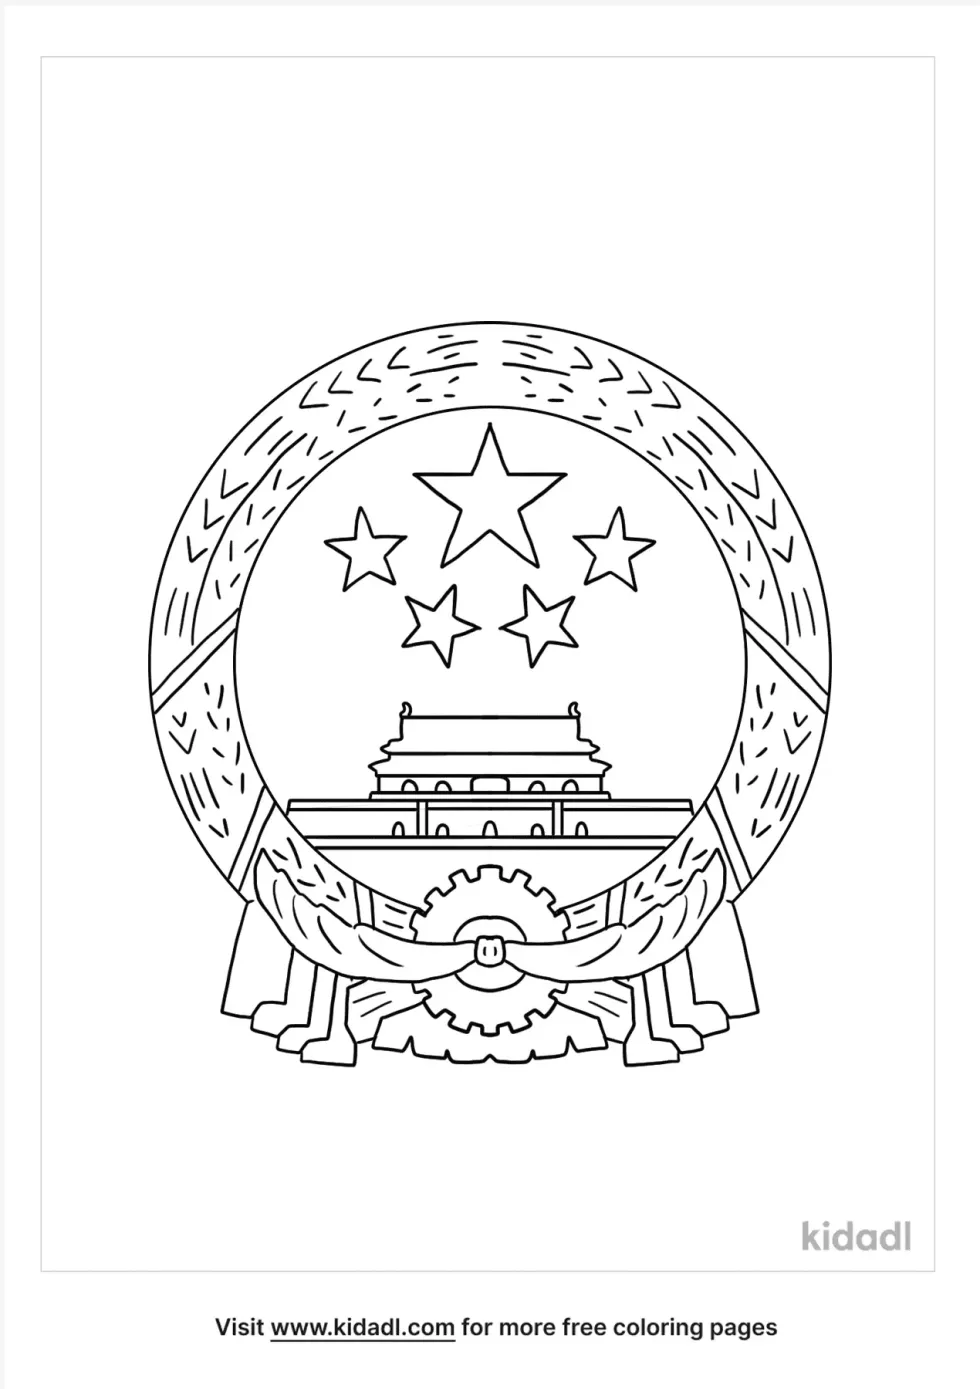 national-emblem-of-republic-of-china-kidadl